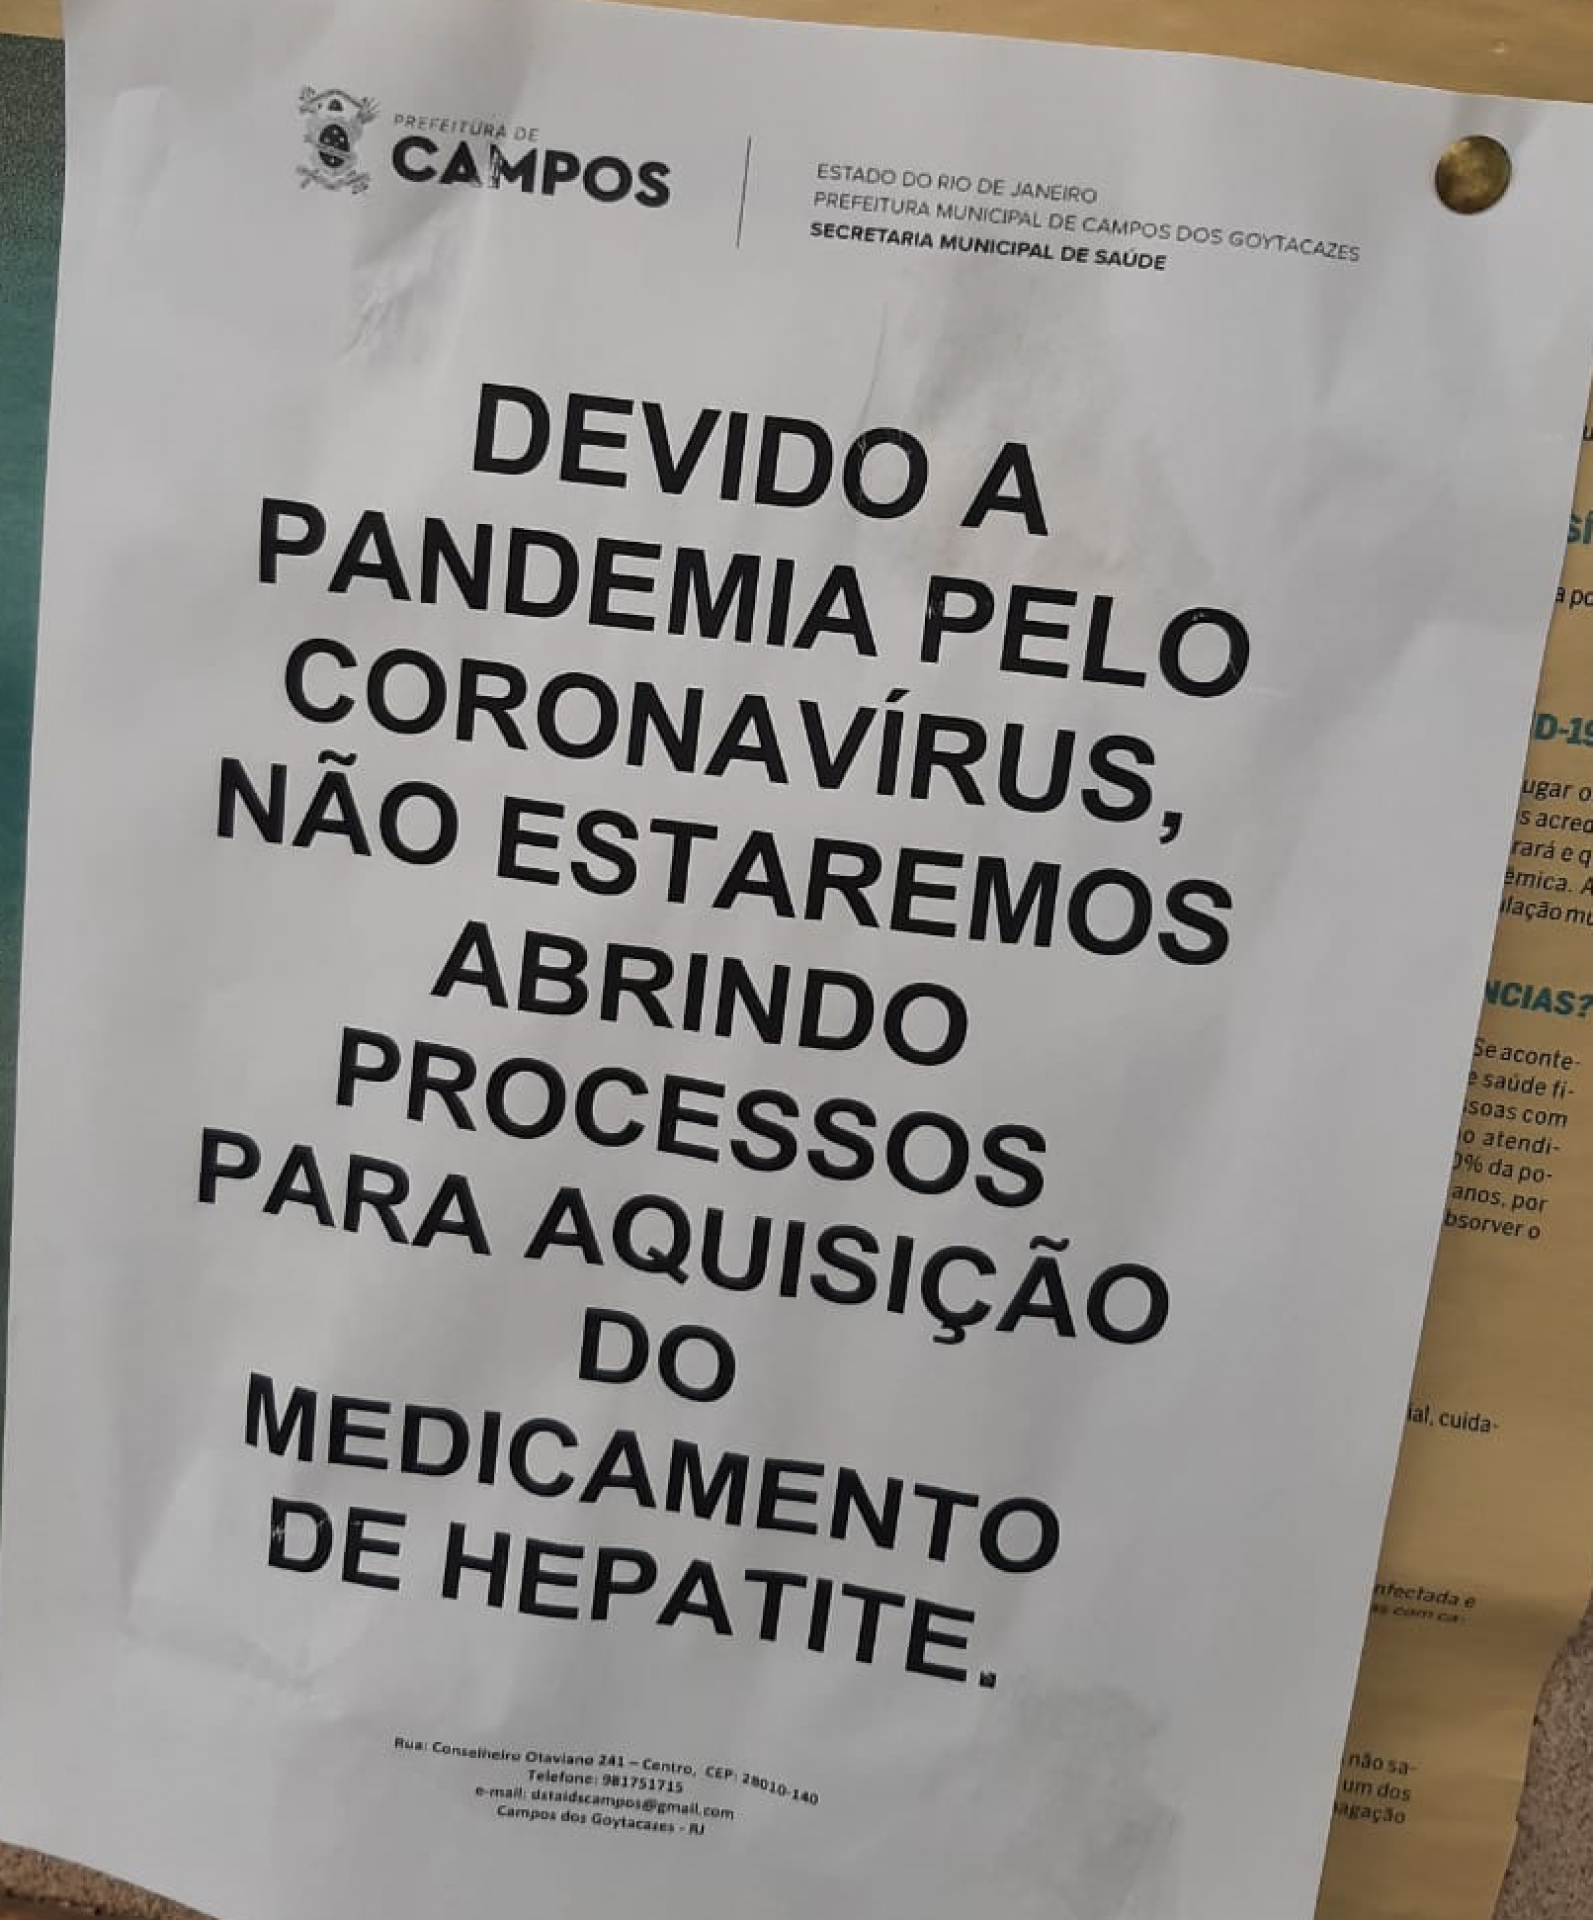 Ativistas denunciam fechamento de serviços de HIV/AIDS no Rio de Janeiro